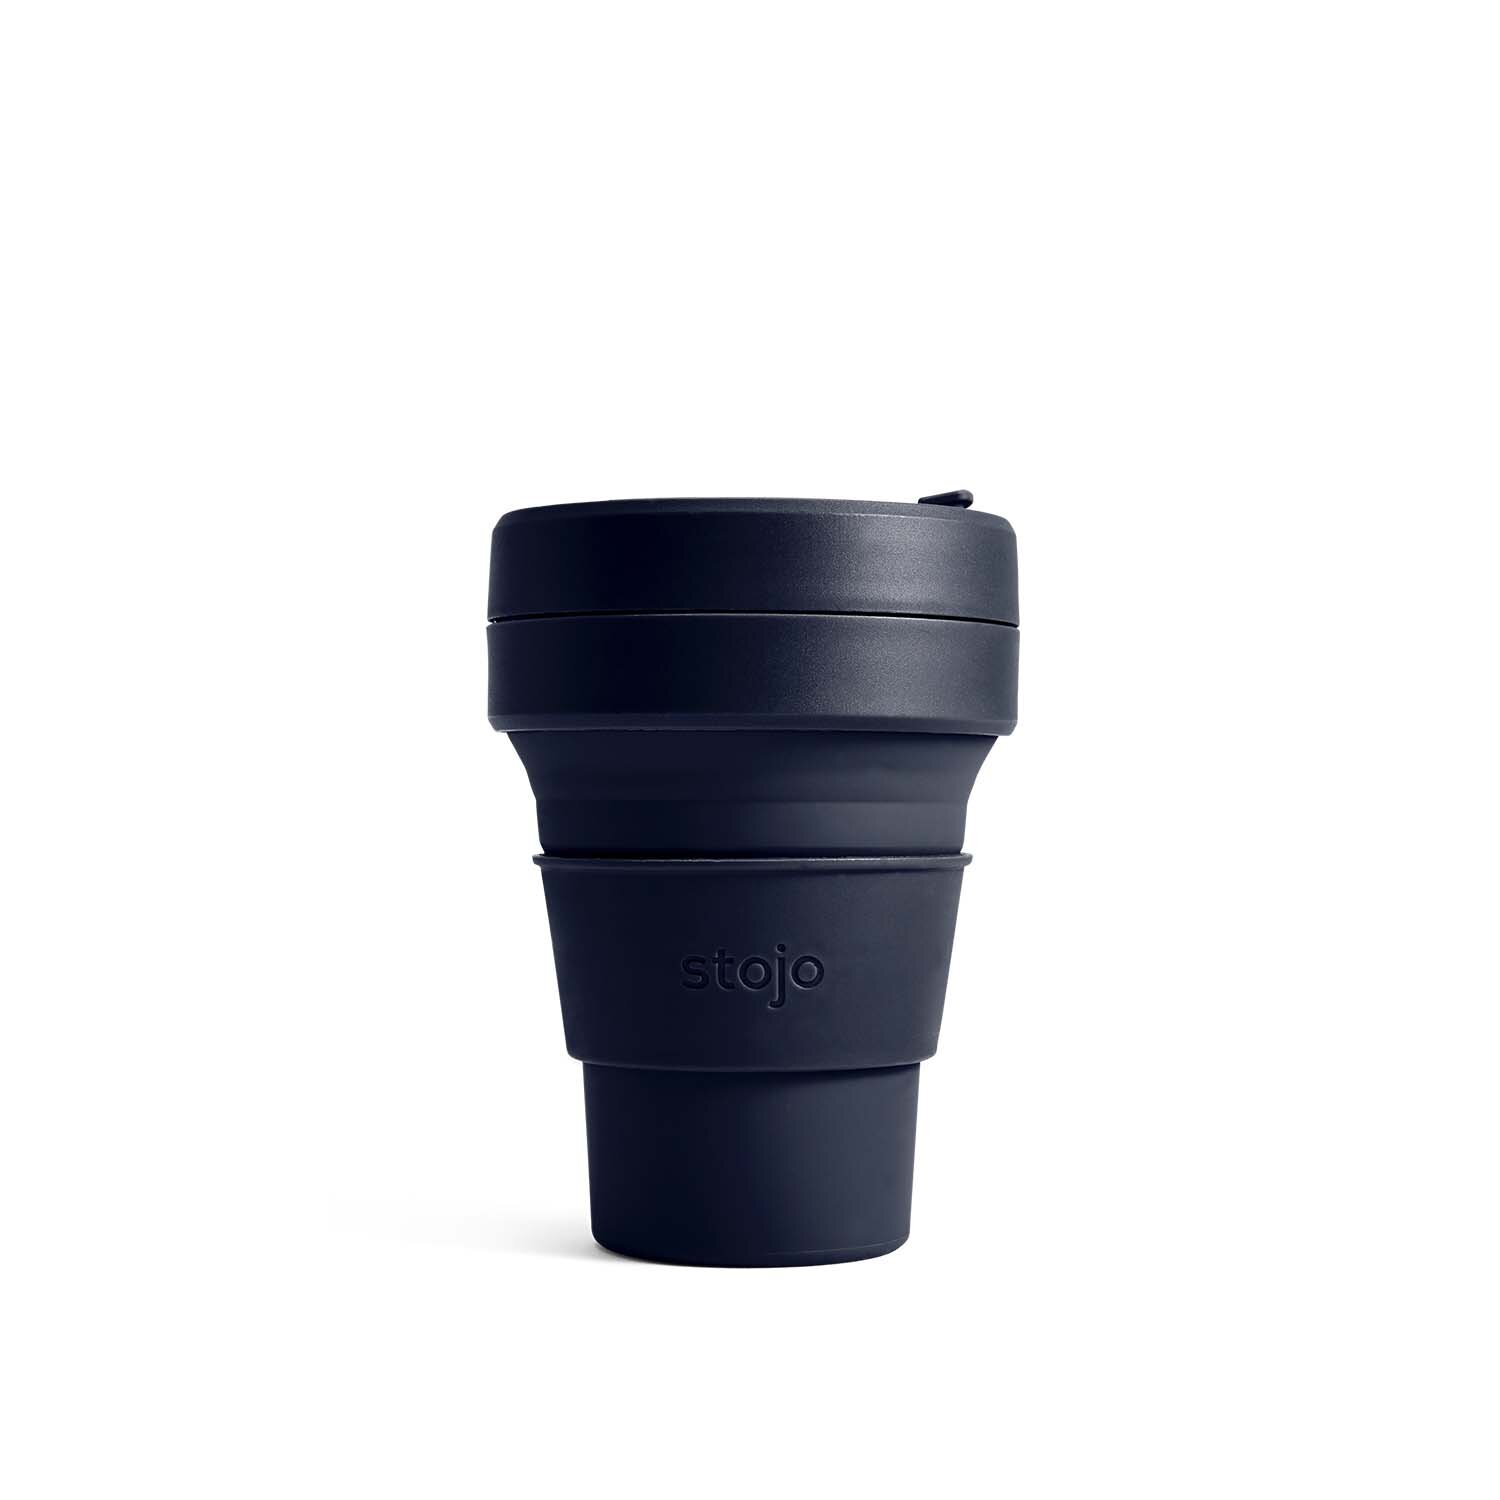  Pocket Cup - 12,7 cm déplié 5,1 cm plié - 355 ml - S1-DNM 